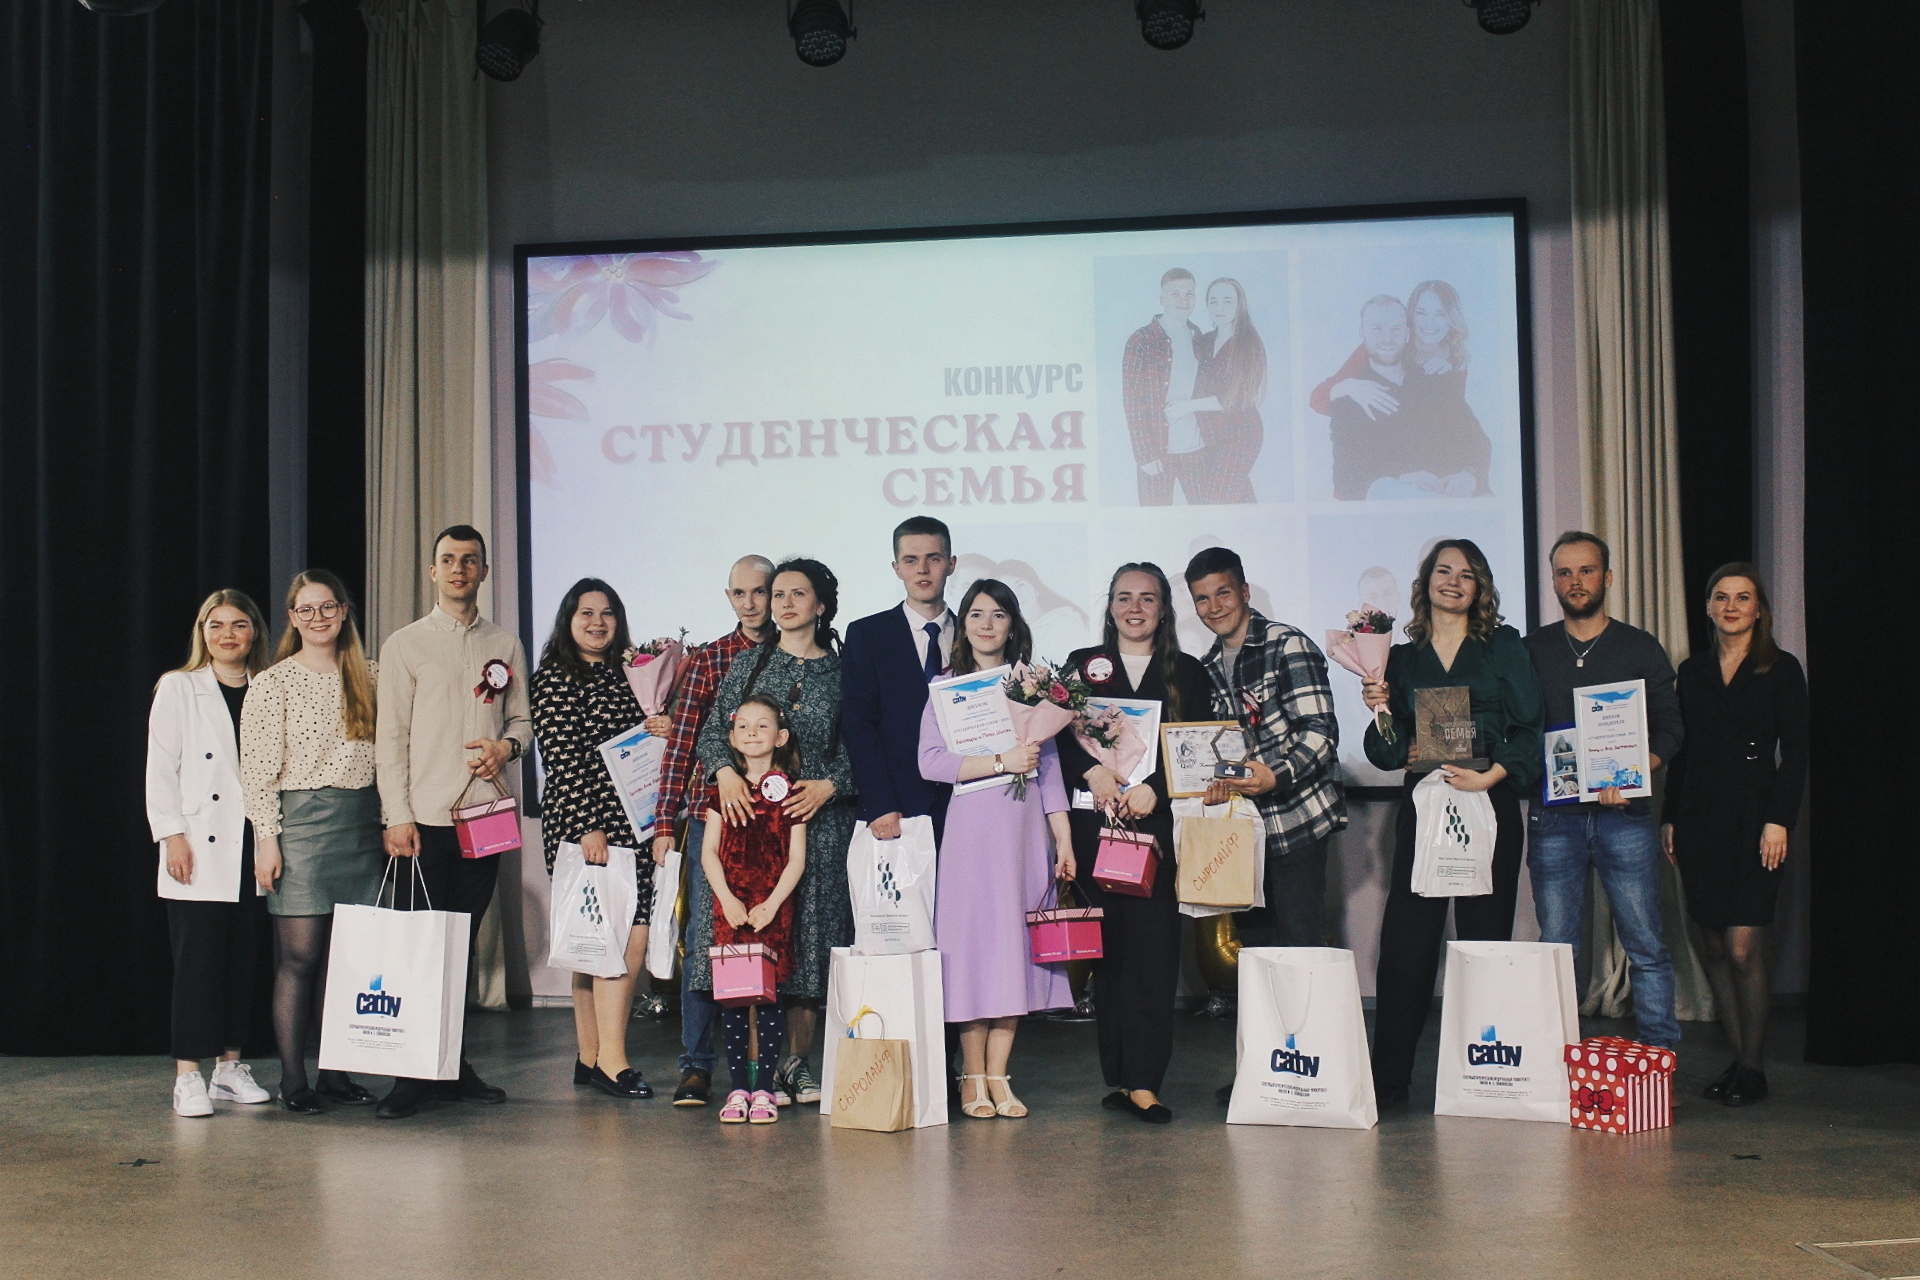 Фото 15. Участники конкурса _Студенческая семья - 2022_ и организаторы. Фото_ Анастасия Борзова.jpg